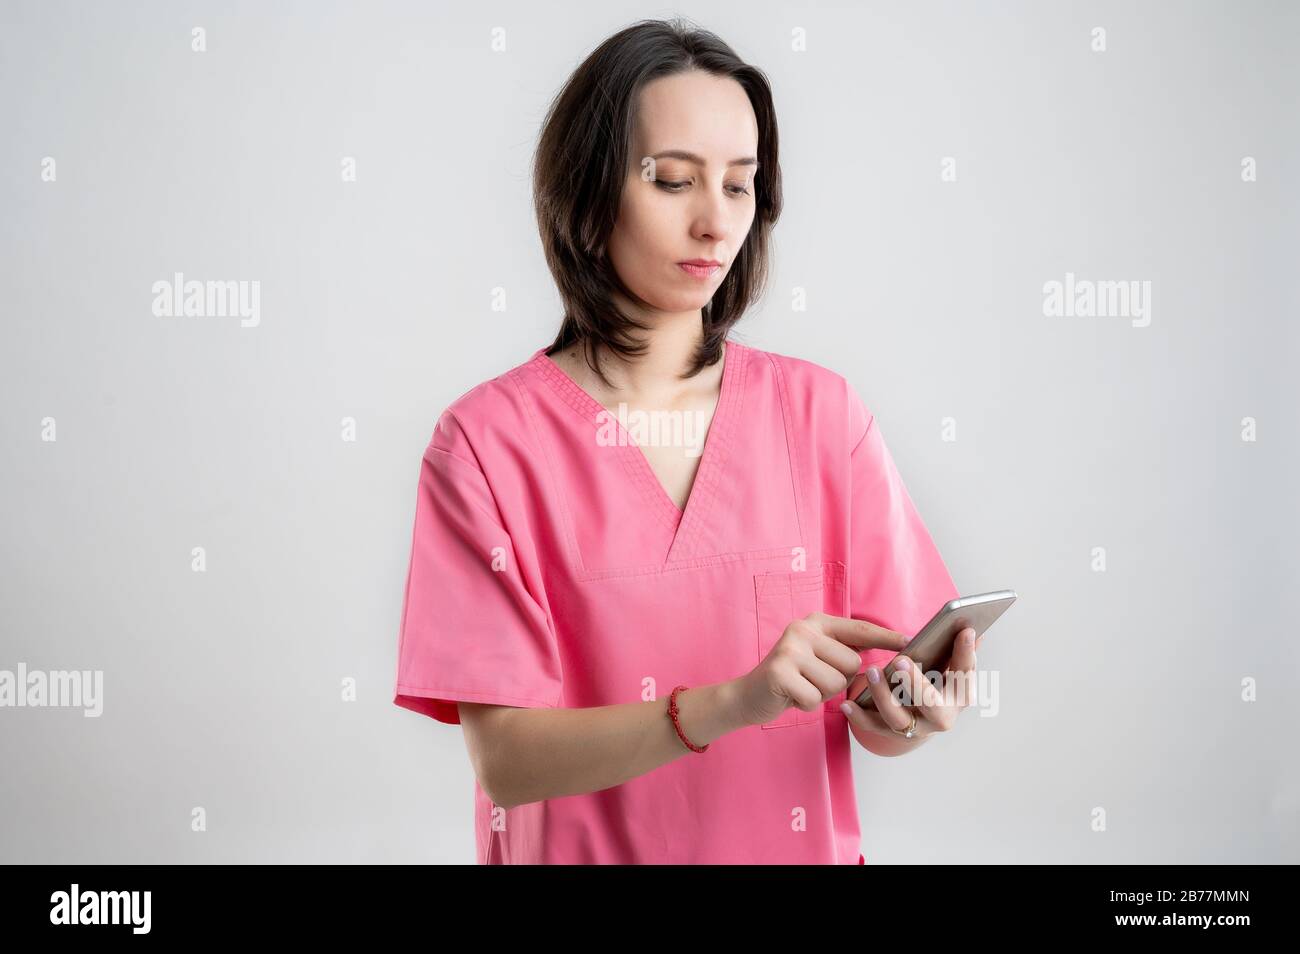 Junge Frau medizinische Fachkrankenschwester oder Arzt mit pinkfarbenen Krankenhauskleidung, mit braunen Haaren, Smartphone halten, SMS senden, Nachrichten senden po Stockfoto